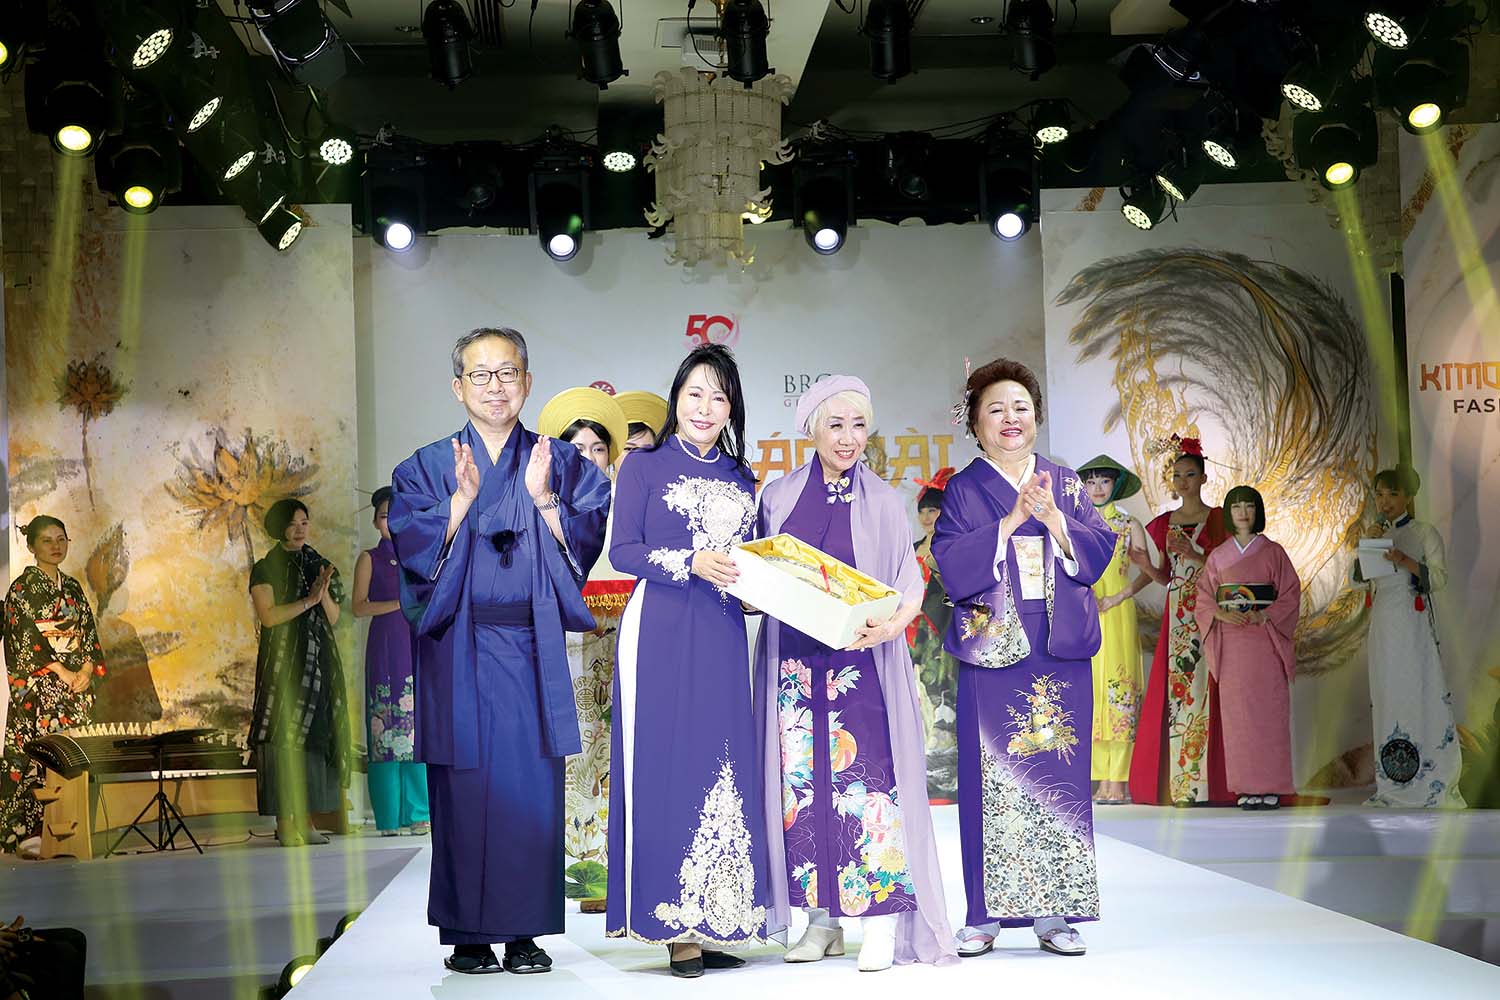 Ban Tổ chức và khách mời nhận quà lưu niệm từ chương trình Kimono - Aodai Fashion Show. Từ trái qua phải: Ngài Yamada Takio, Đại sứ đặc mệnh toàn quyền Nhật Bản tại Việt Nam; bà Mori Masako, Cố vấn đặc biệt của Thủ tướng Nhật Bản; bà Kobayashi Eiko, nhà thiết kế và nhà sáng lập của Be-Japon; bà Nguyễn Thị Nga, Chủ tịch Tập đoàn BRG